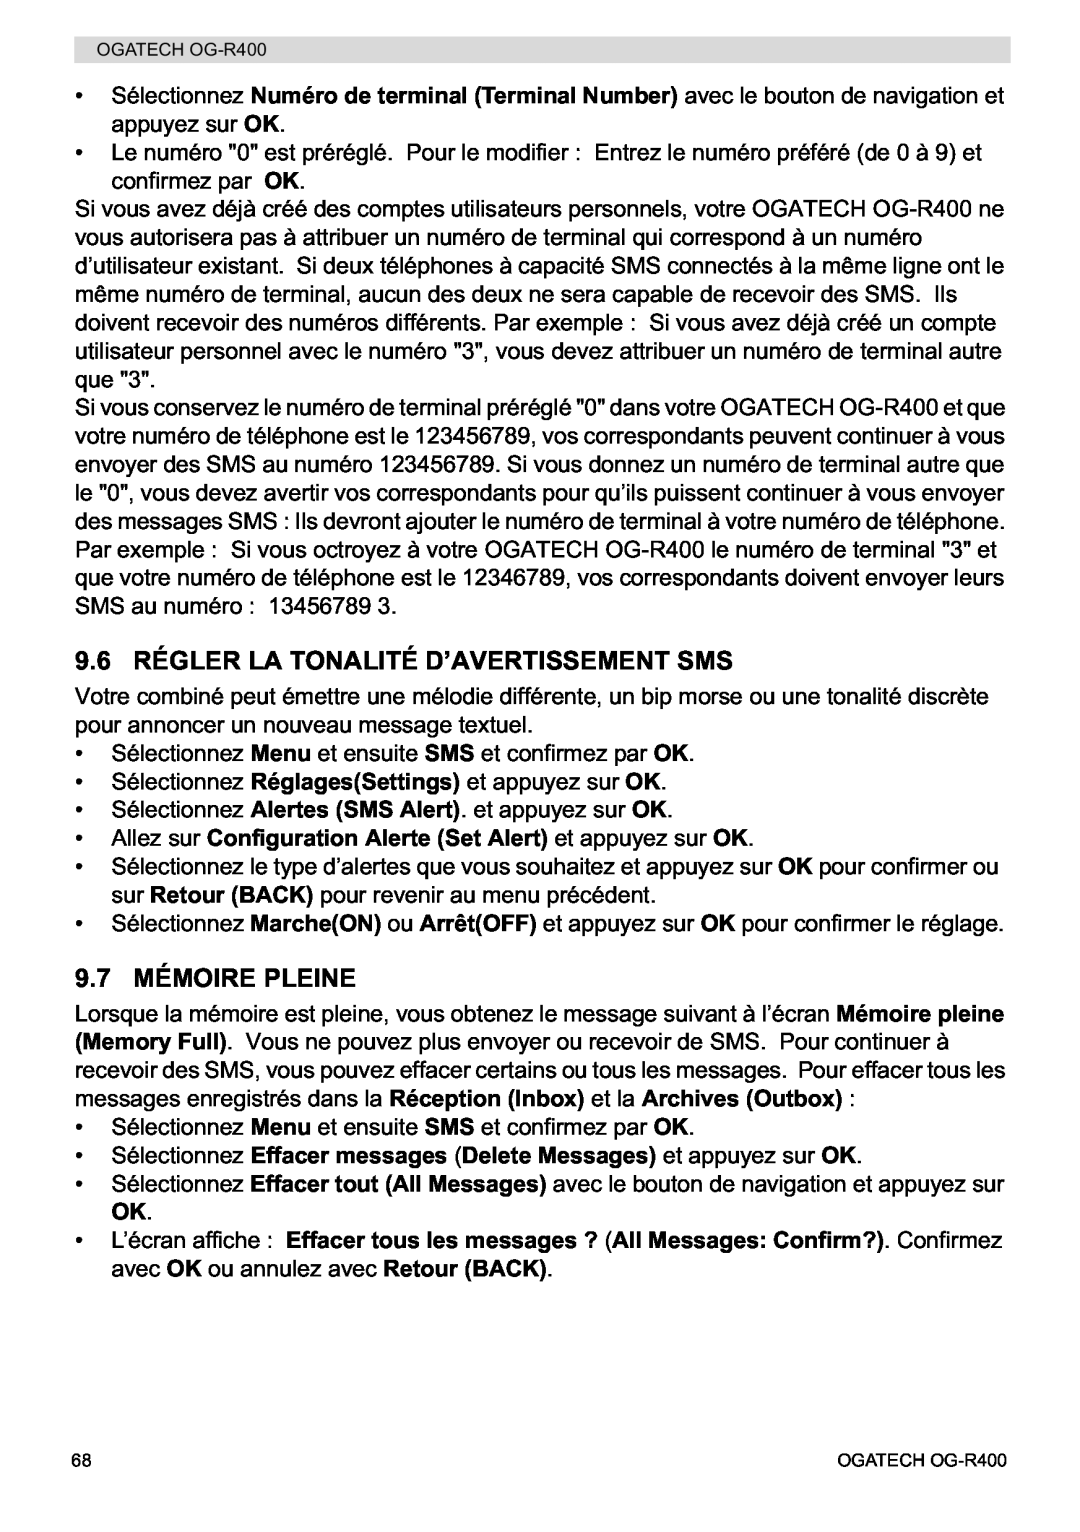 Topcom OG-R400 manual 9.6 RÉGLER LA TONALITÉ D’AVERTISSEMENT SMS, 9.7 MÉMOIRE PLEINE 